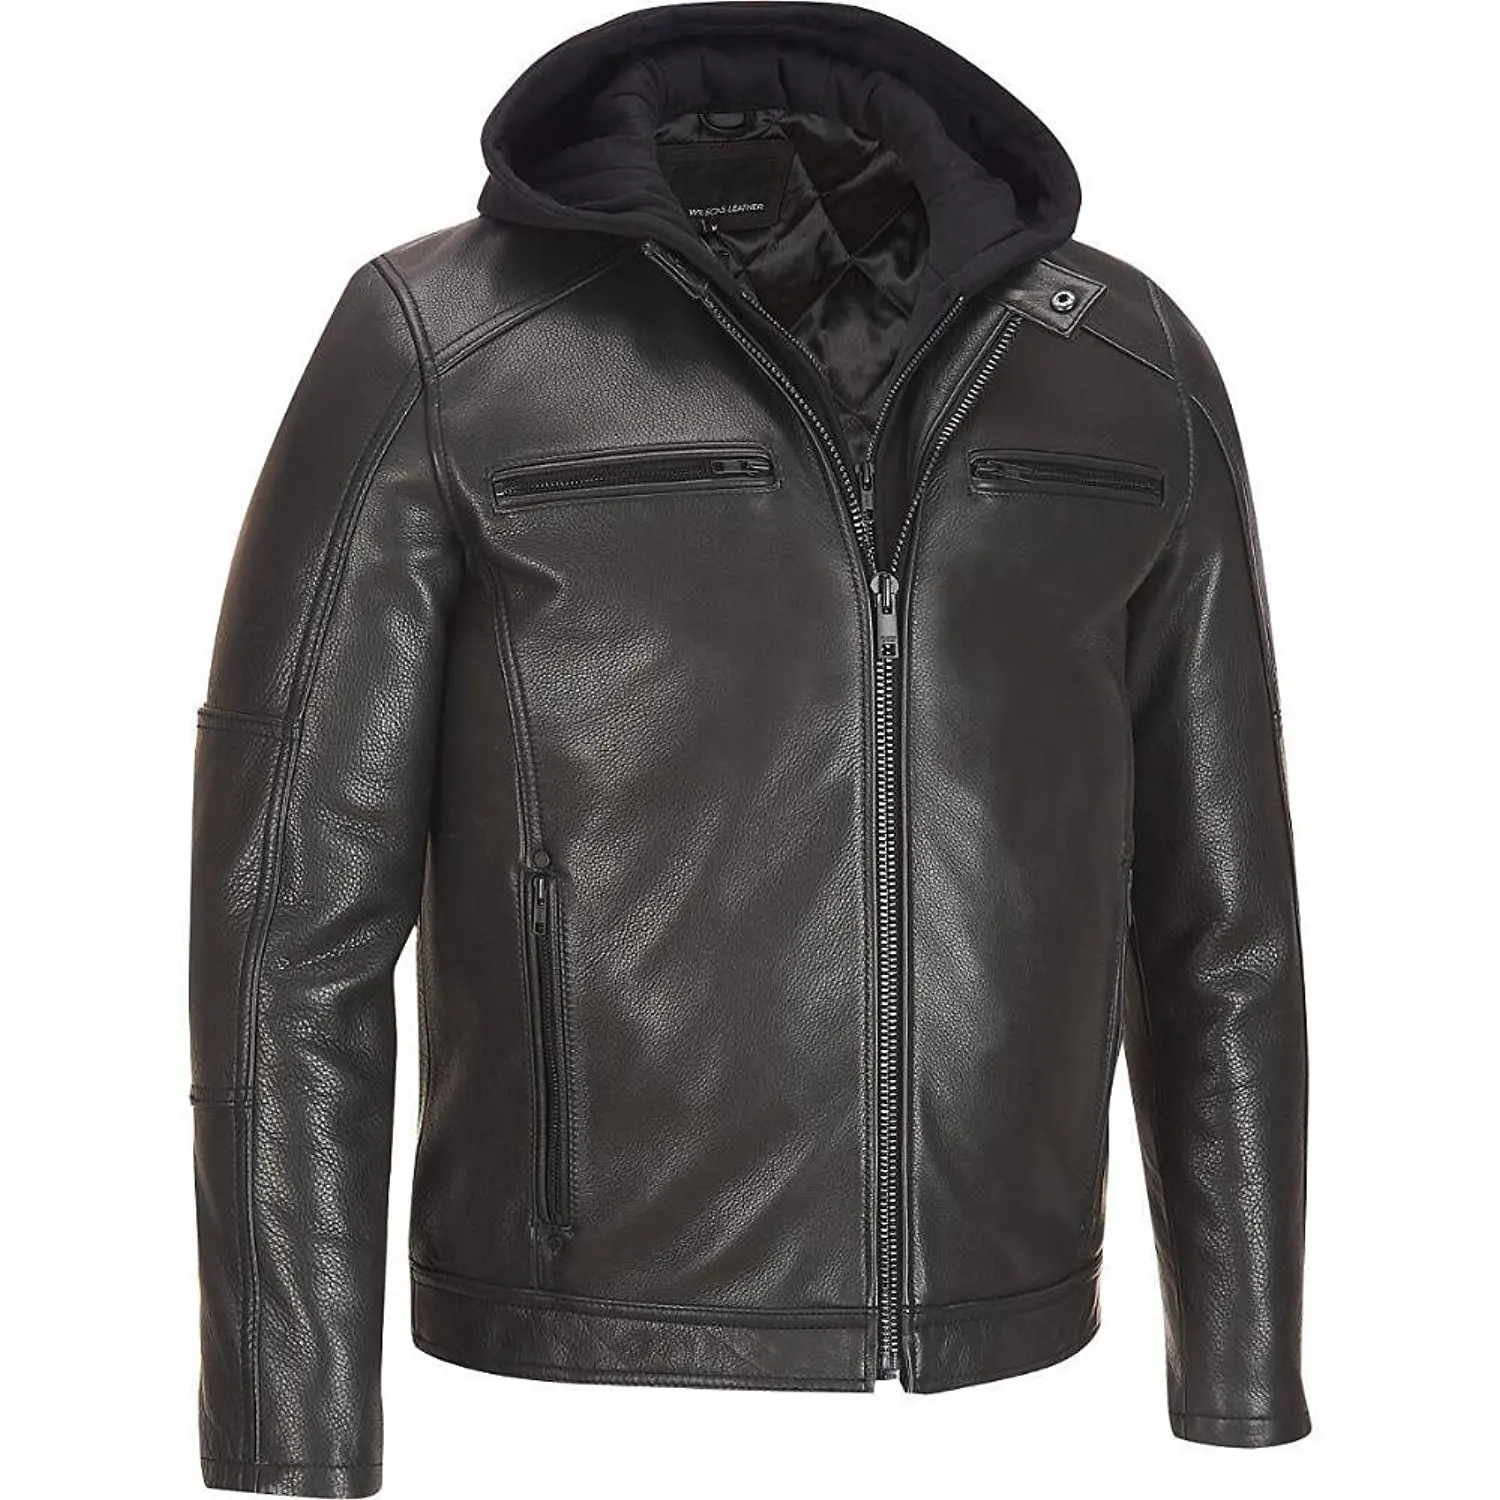 Мужская куртка купить тверь. Кожаная куртка Leather Air Jacket 38118. Алеф кожаные куртки мужские. Куртка Radloff 1927 кожаная мужская. Wilsons Leather куртка.